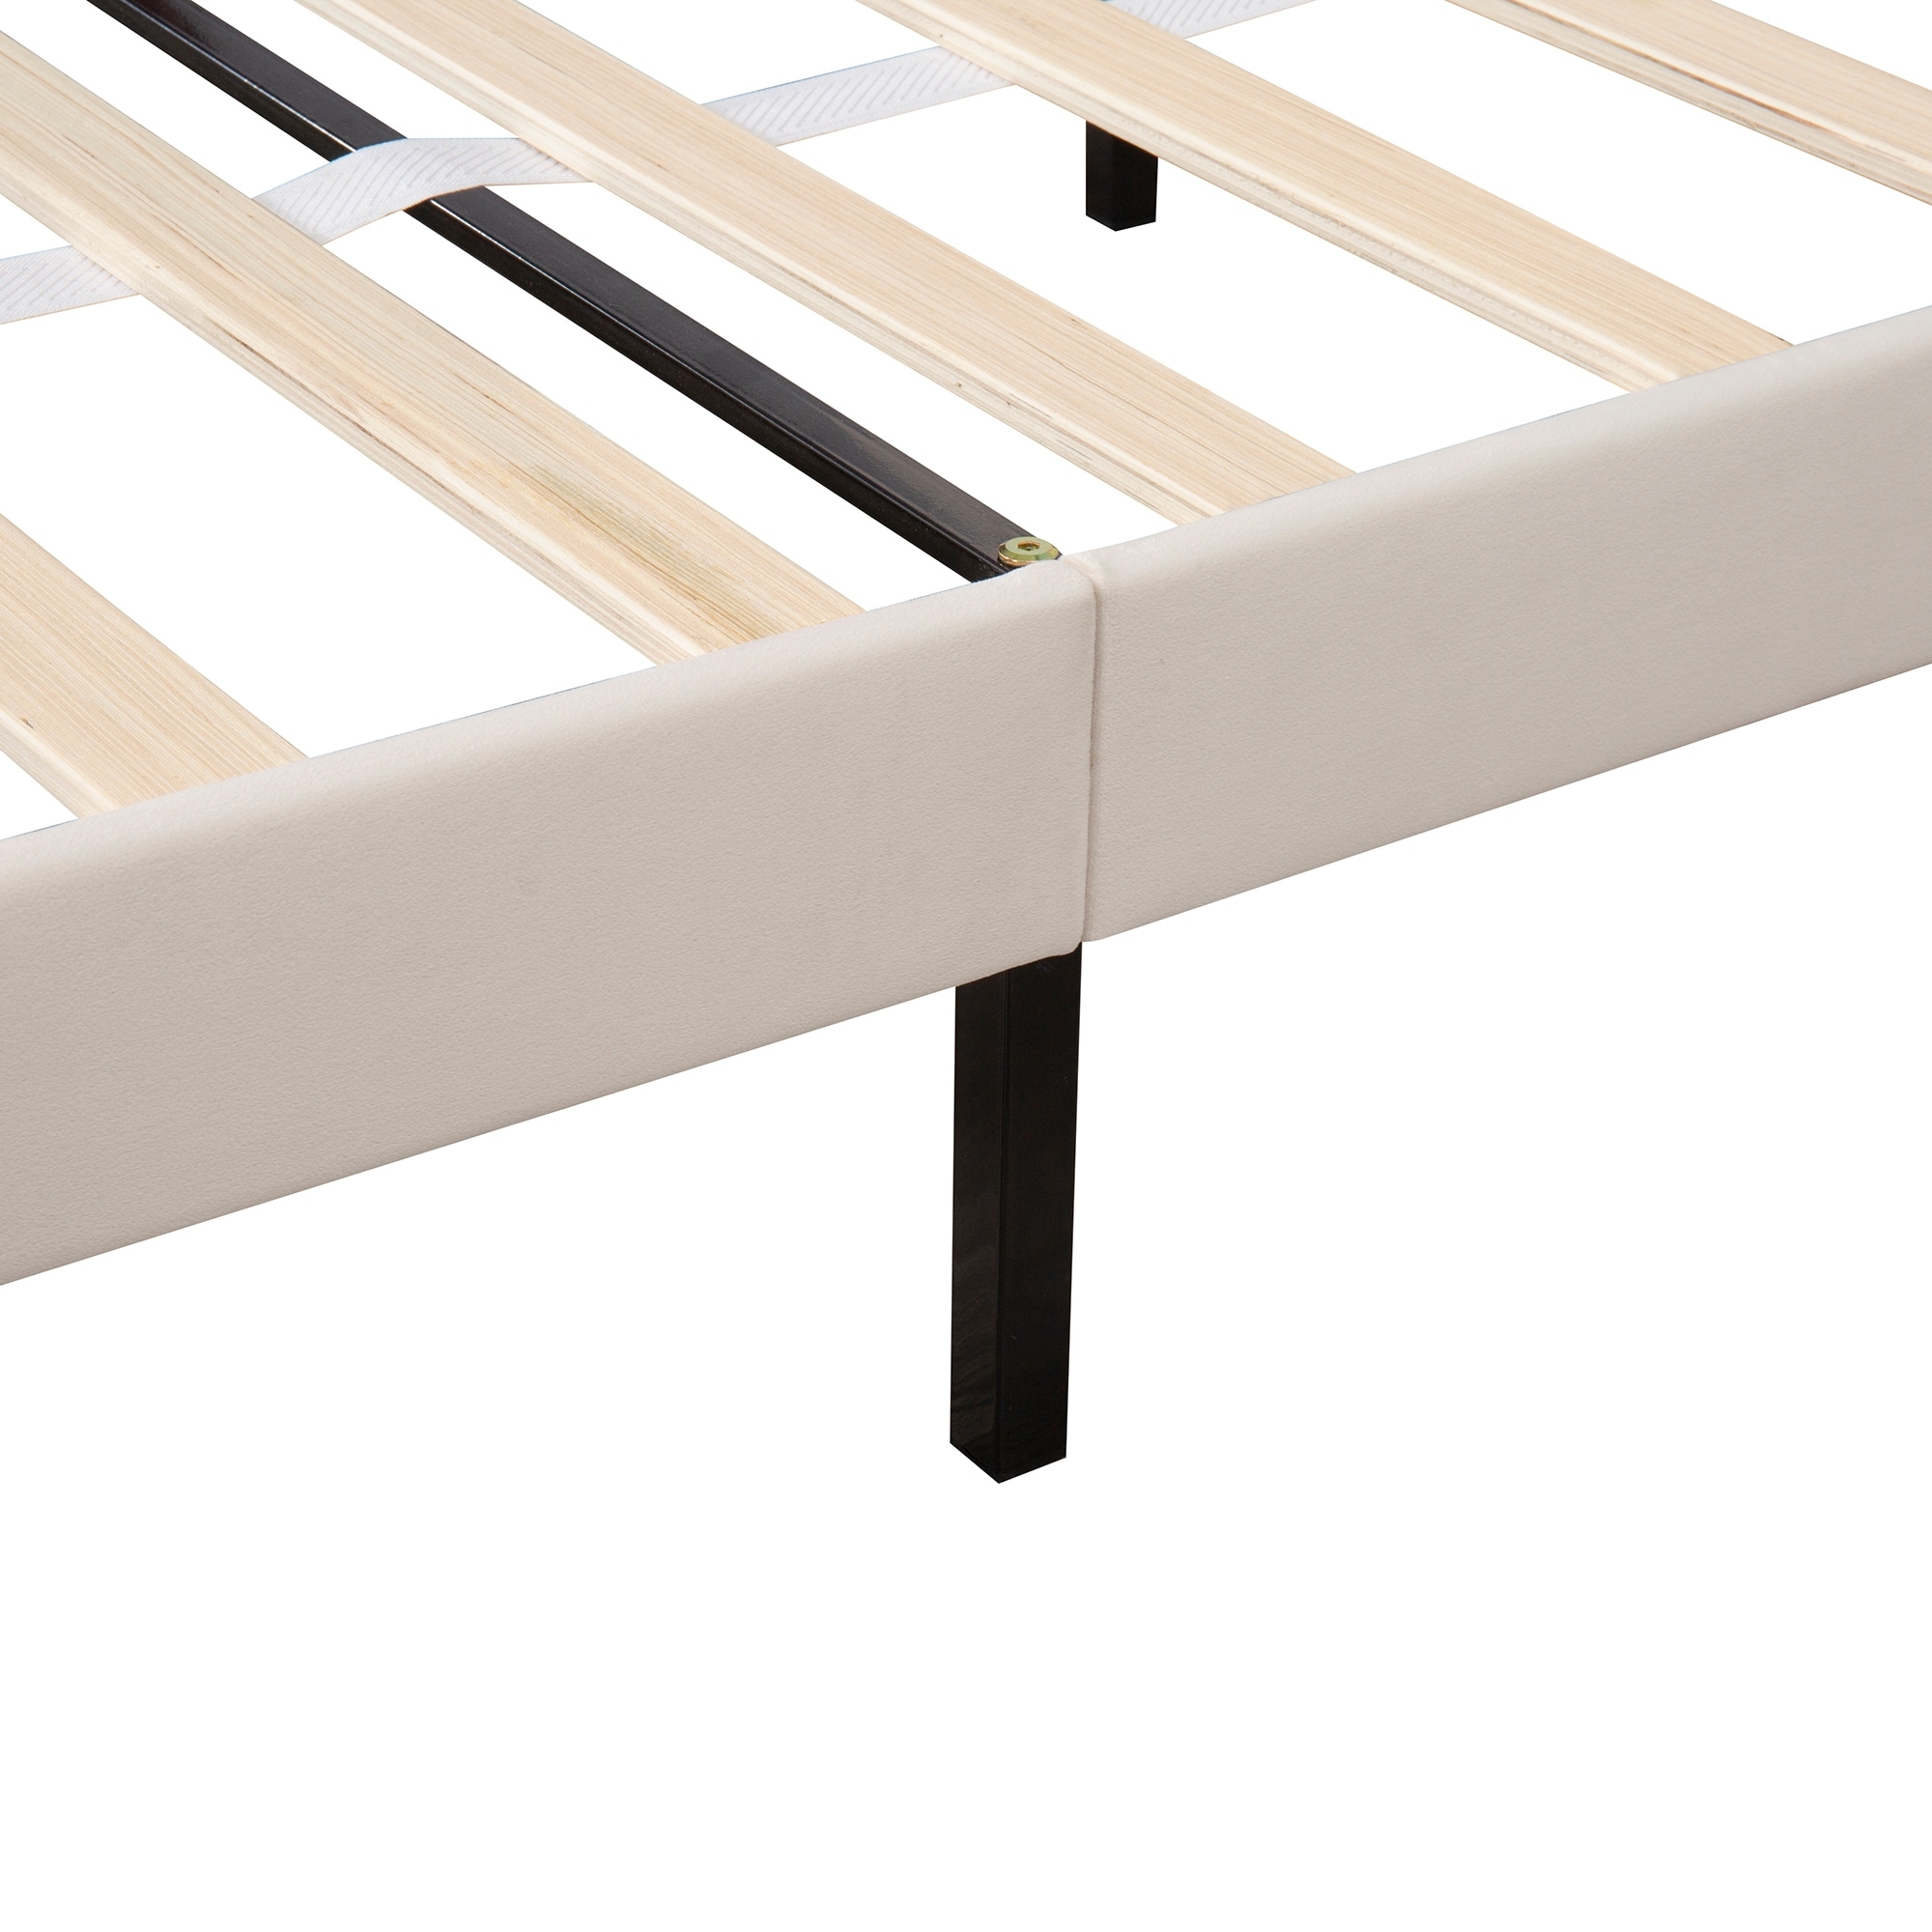 Queen Velvet Upholstered Platform Bed Frames w/Large Storage Drawer & Adjustable Headboard, Wood Slat Support for Bedroom, Beige